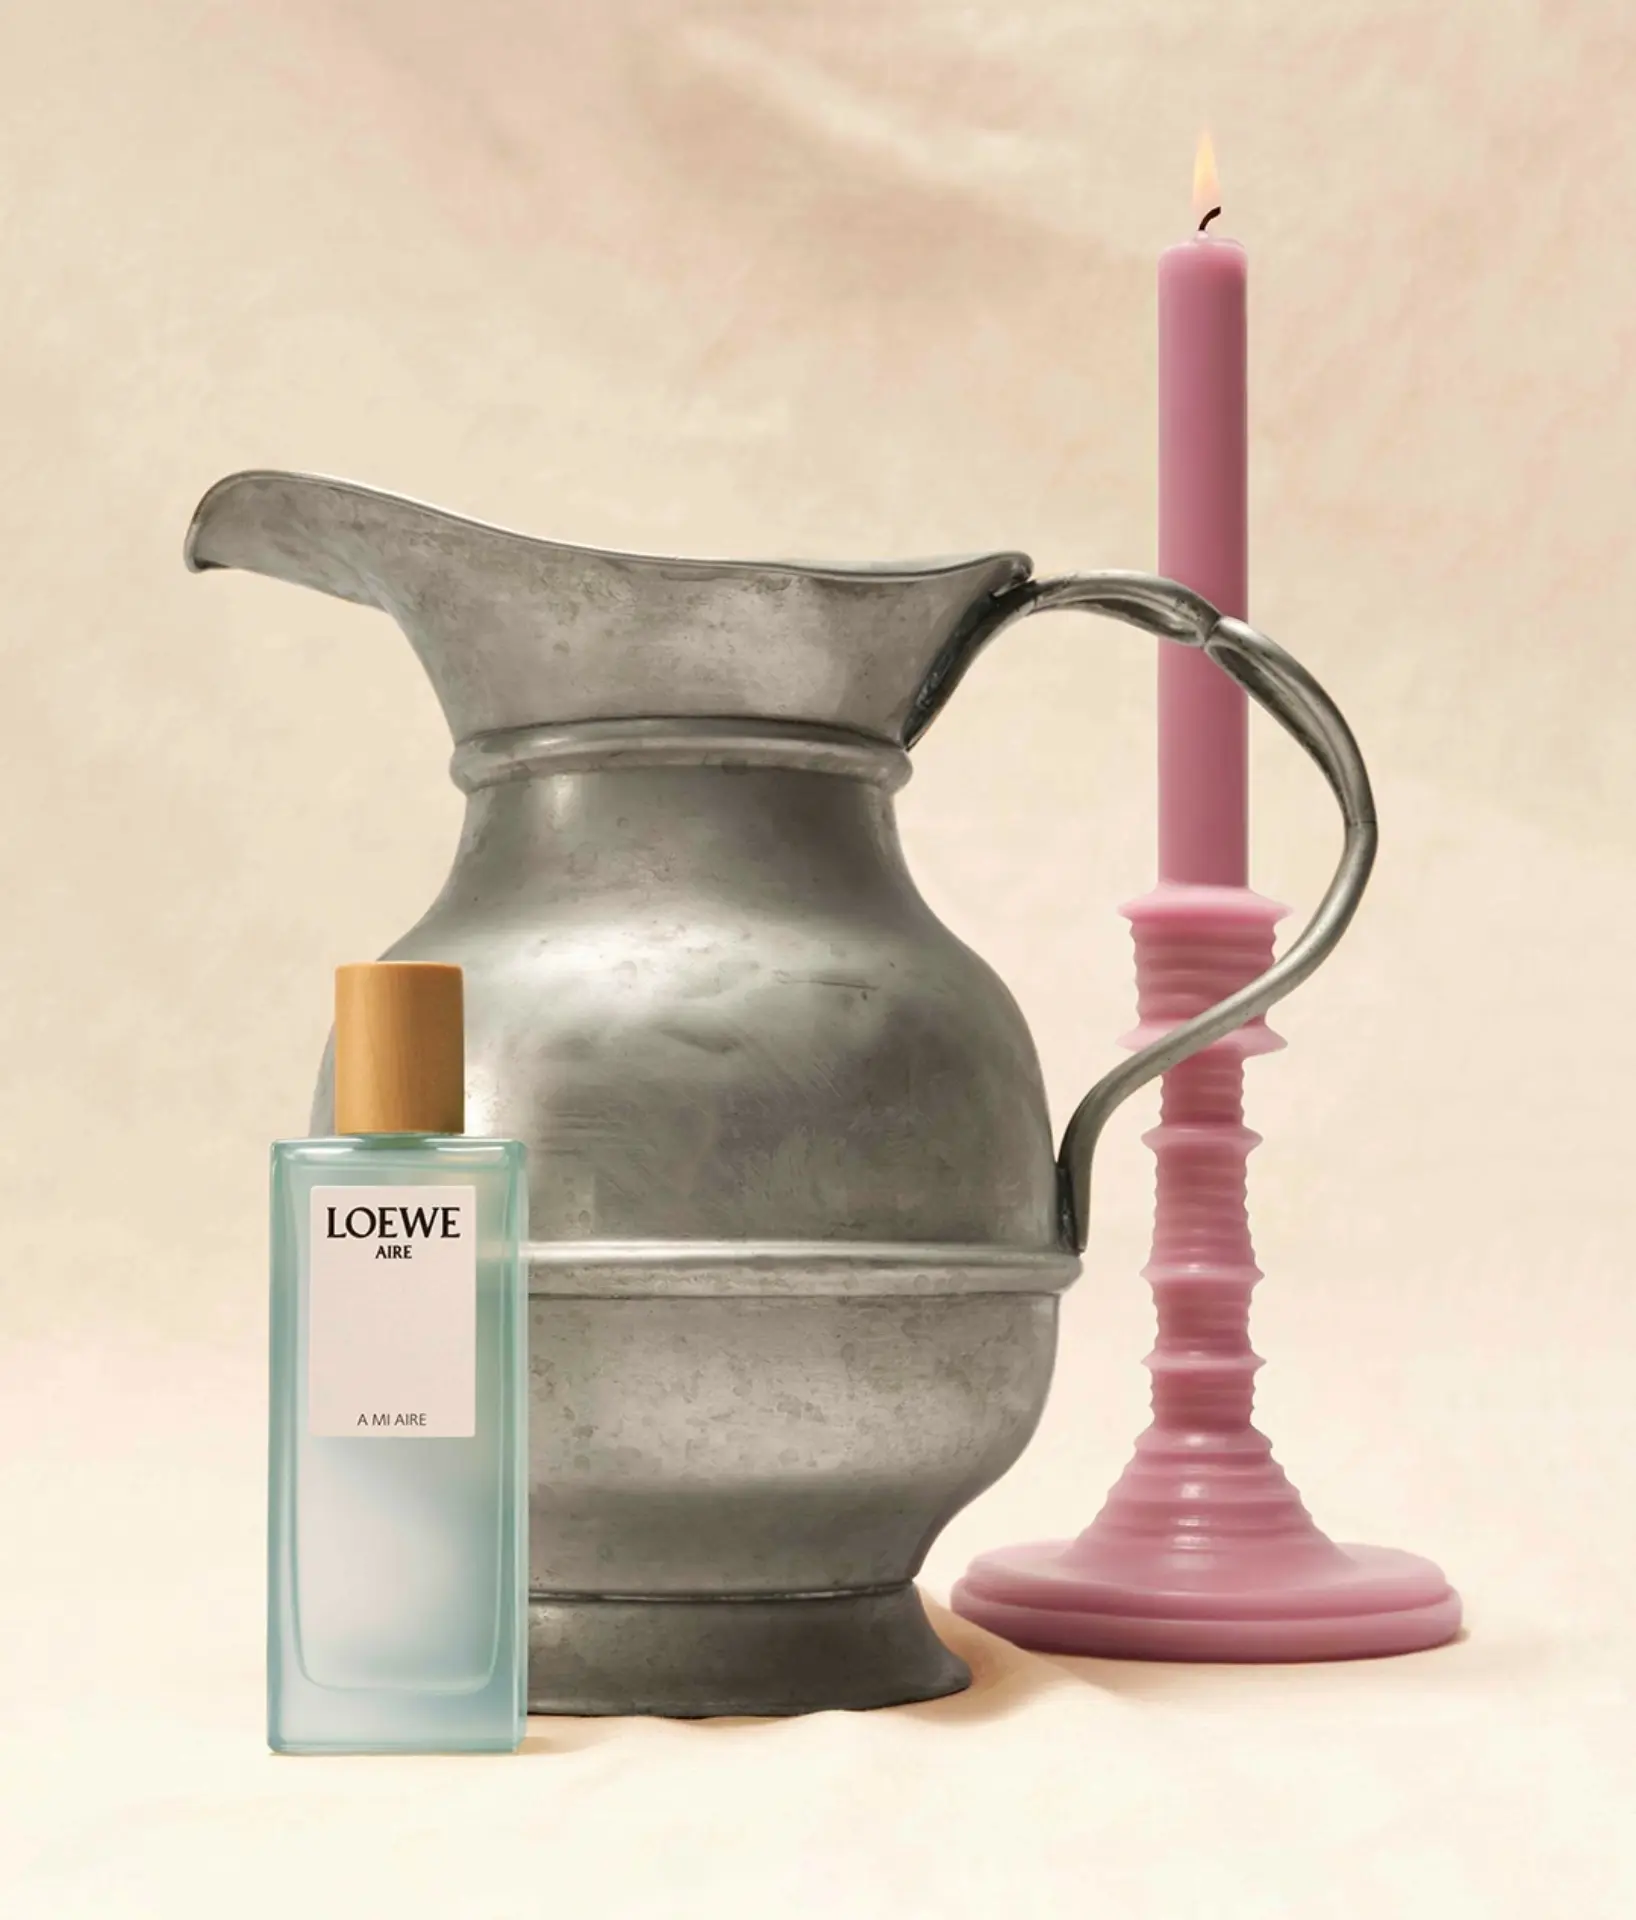 Loewe presenta su nuevo perfume para mujeres